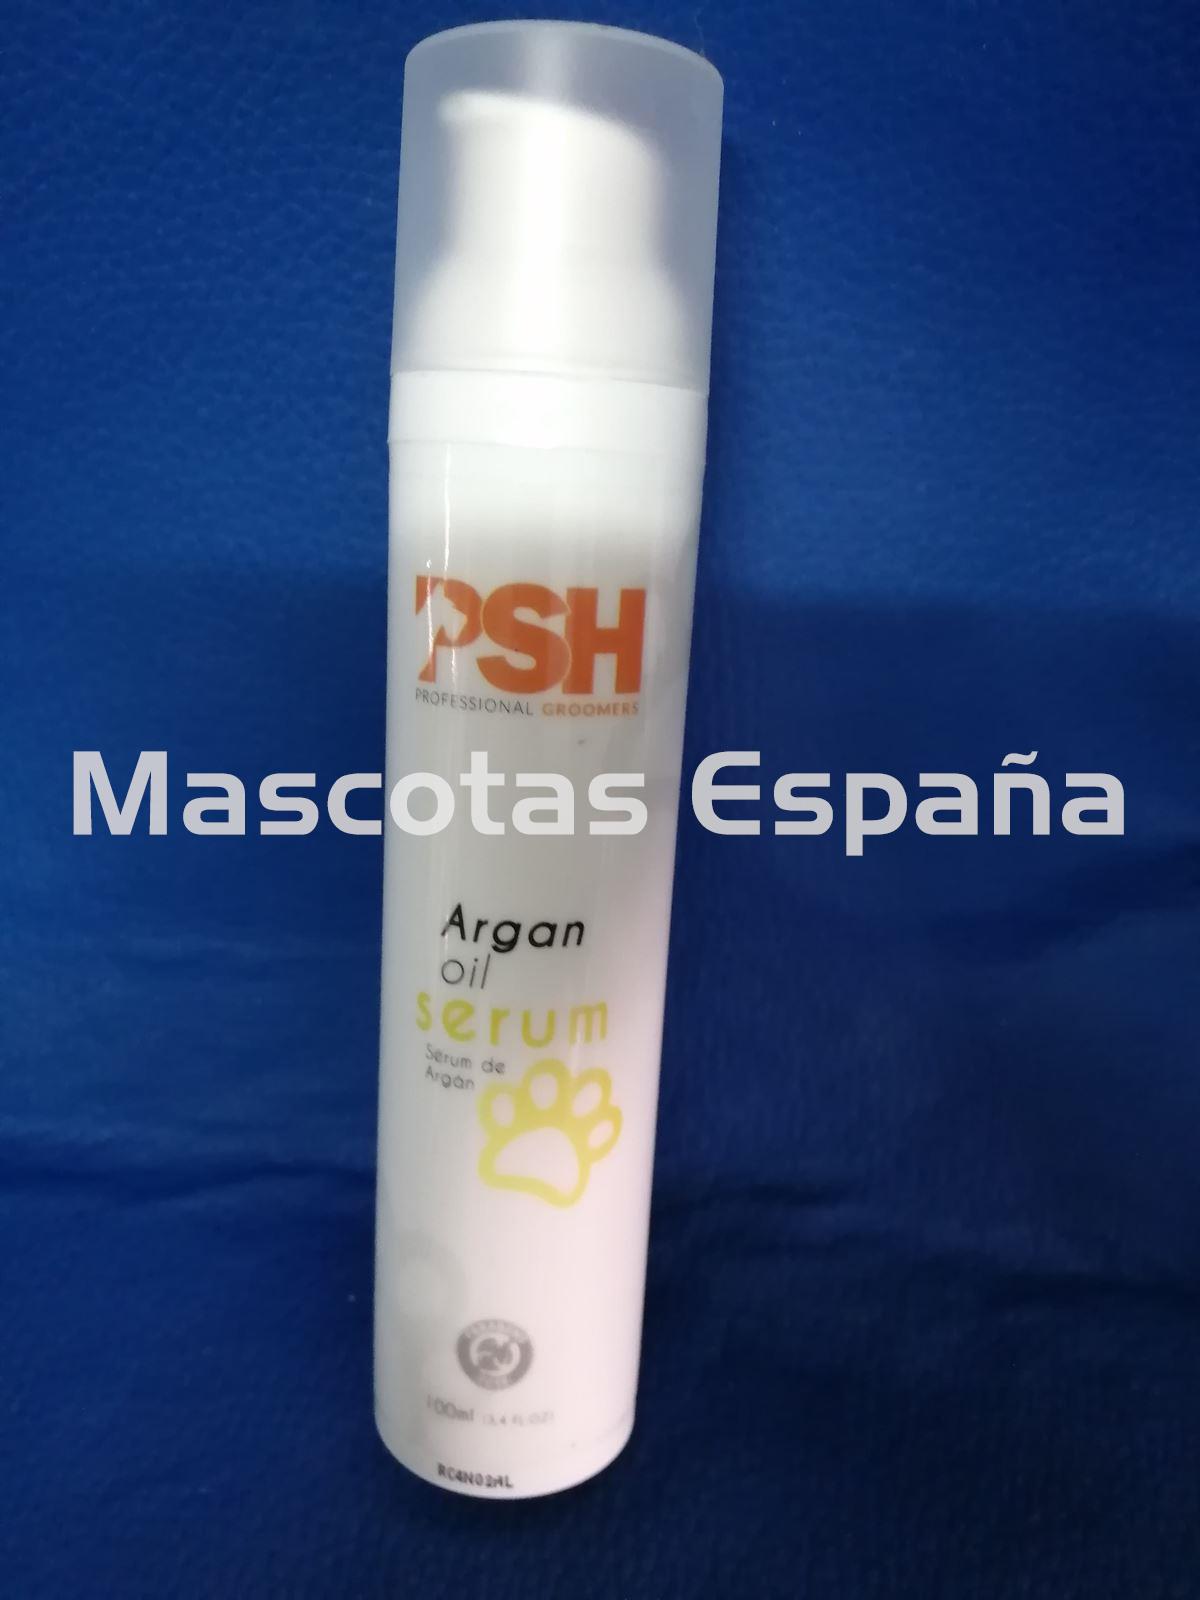 PSH Argan Oil Serum (Serum de Argán) 100ml - Imagen 1